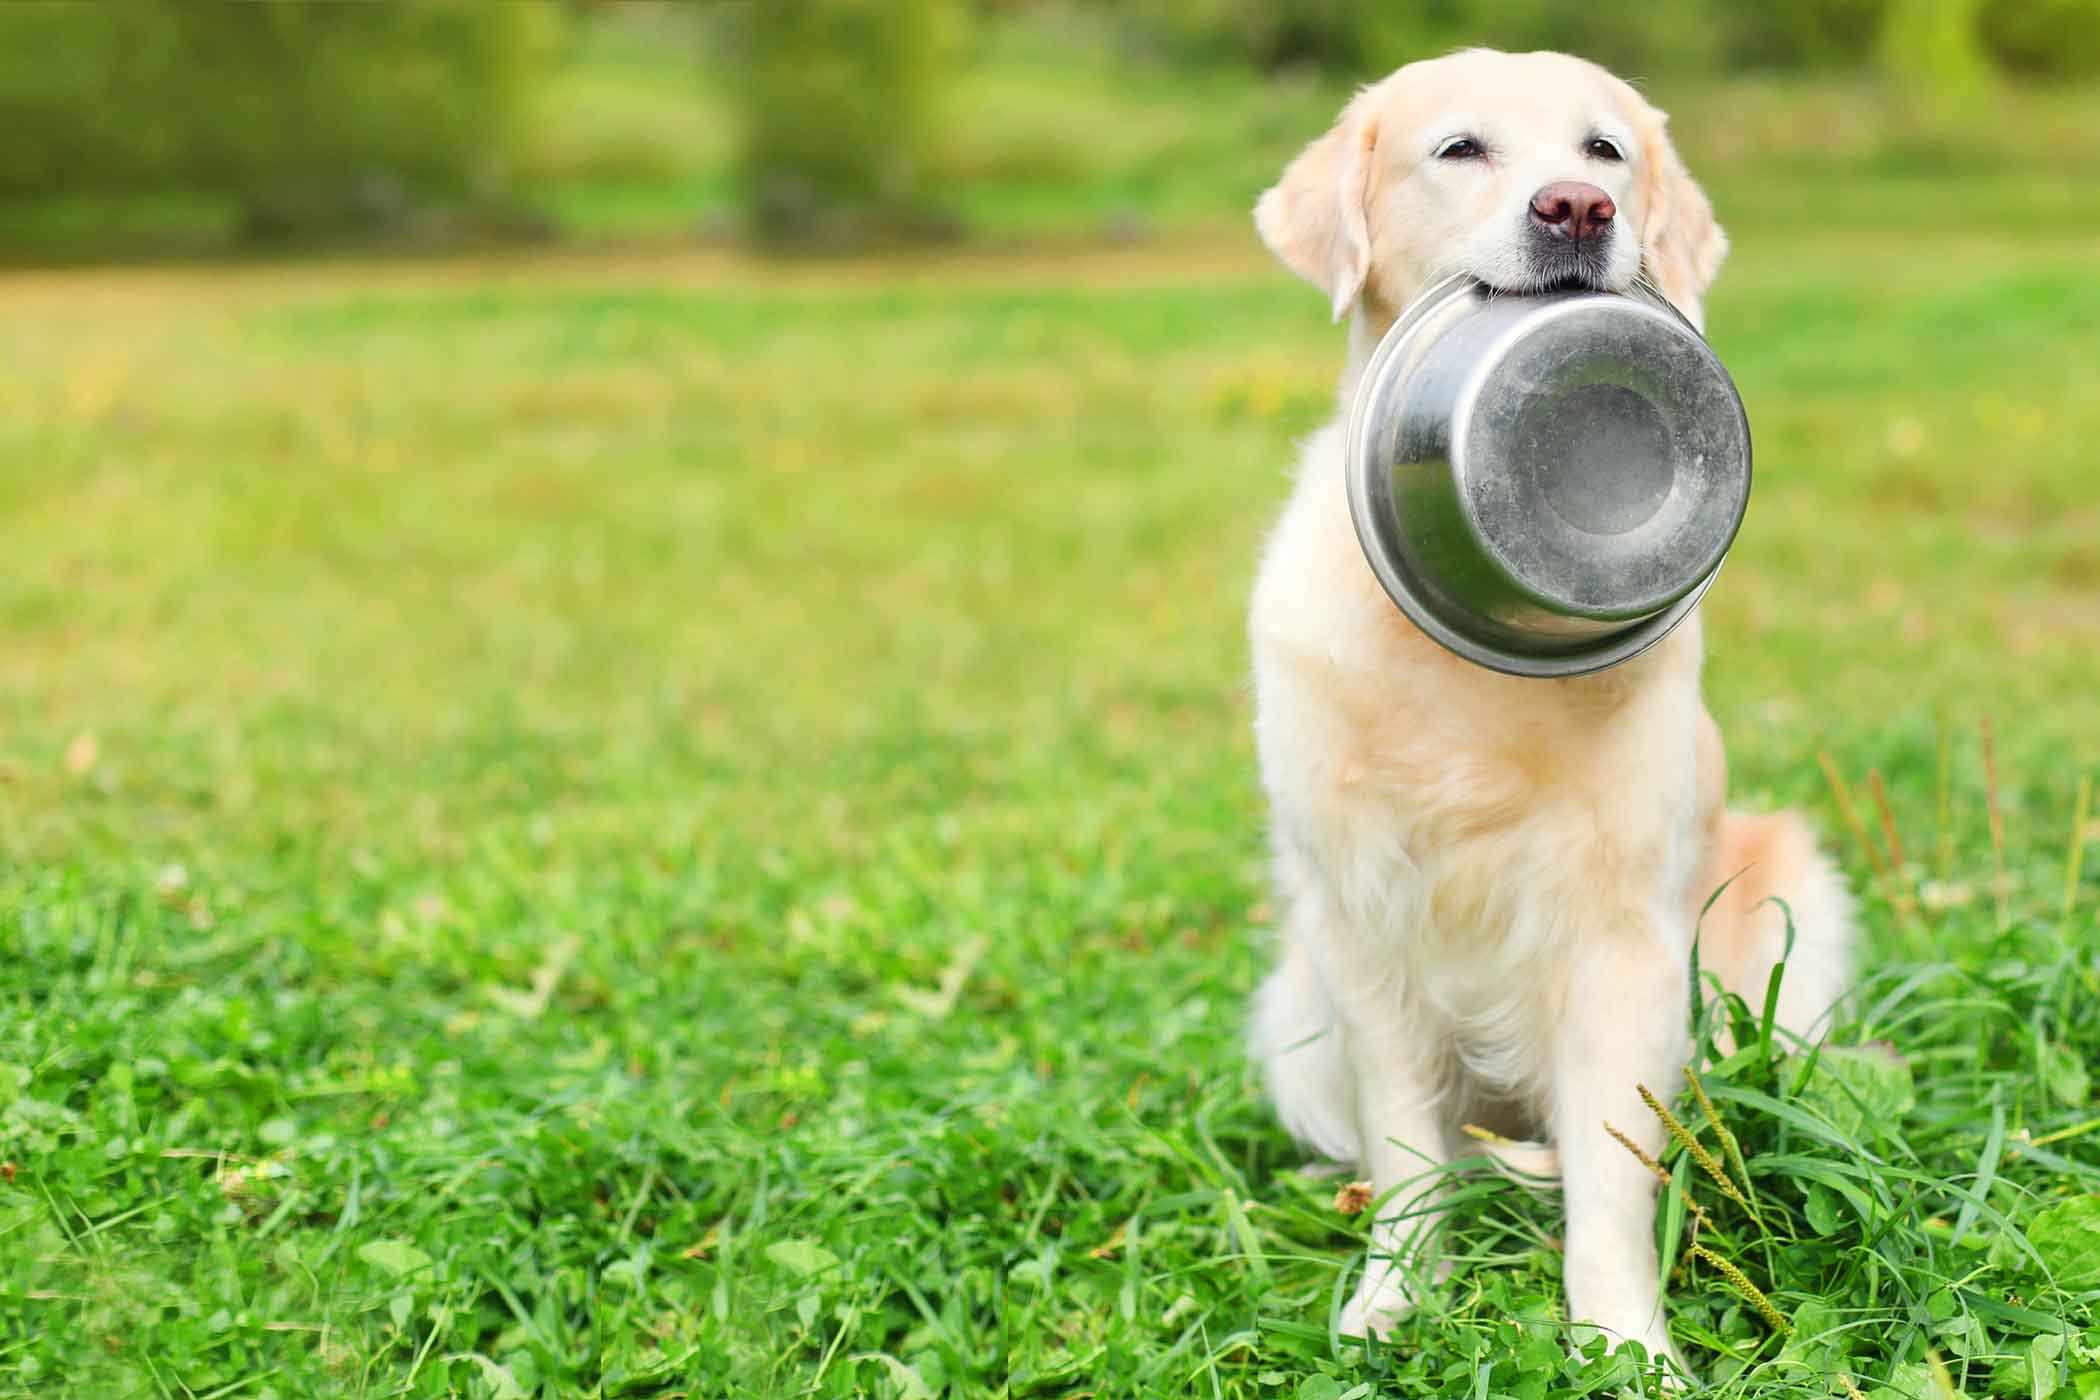 dog eating bowl